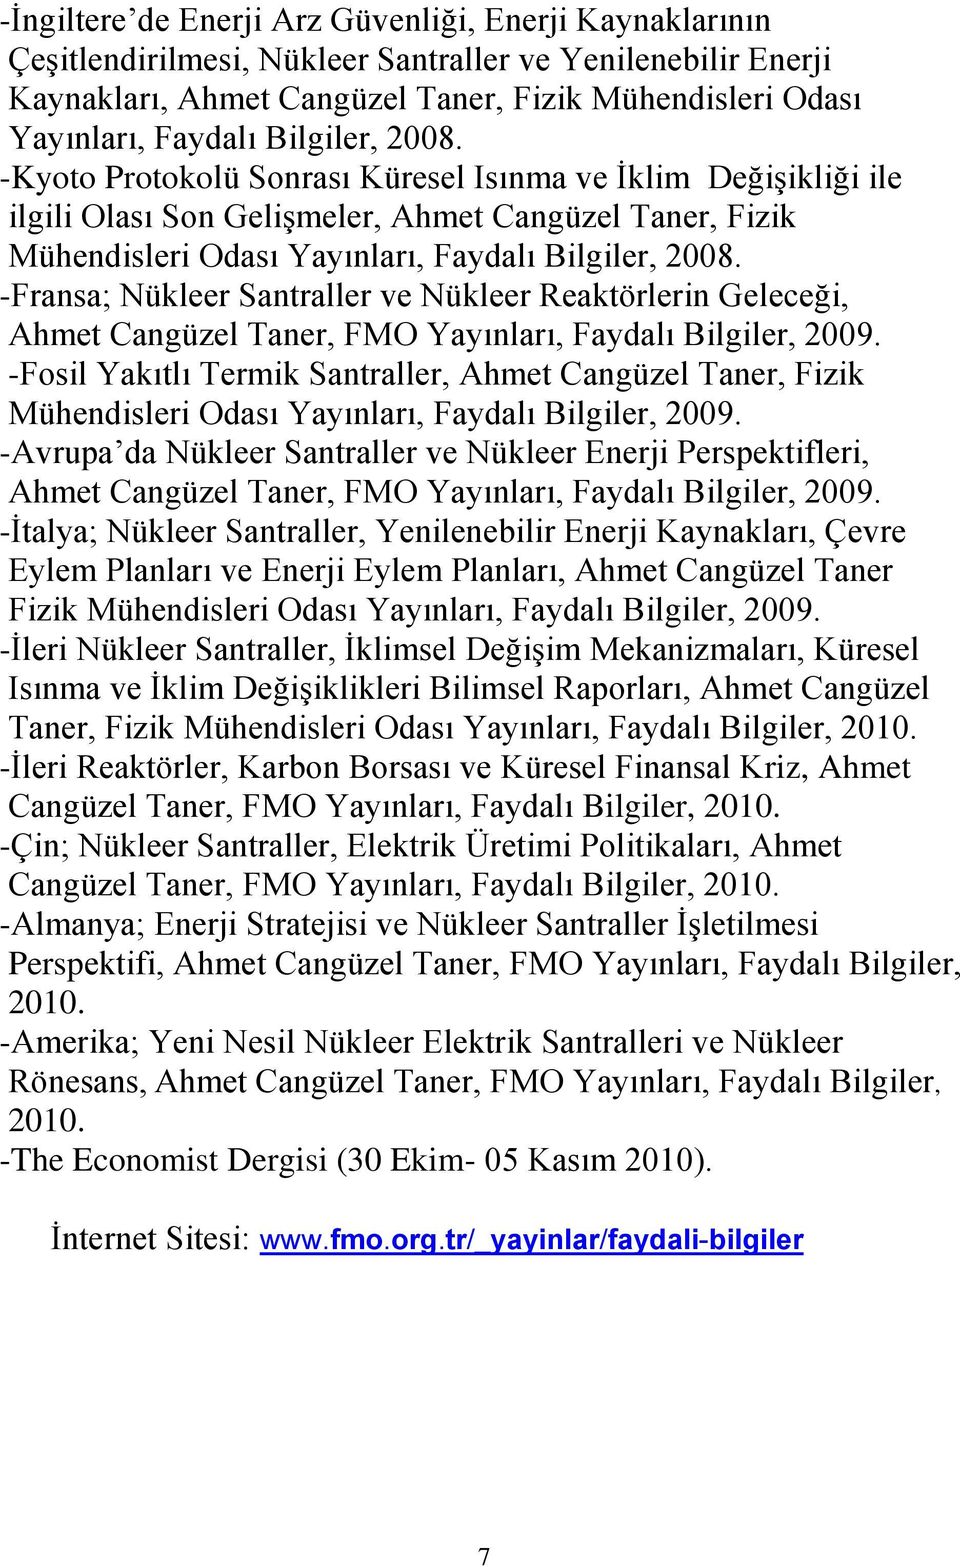 -Fransa; Nükleer Santraller ve Nükleer Reaktörlerin Geleceği, Ahmet Cangüzel Taner, FMO Yayınları, Faydalı Bilgiler, 2009.